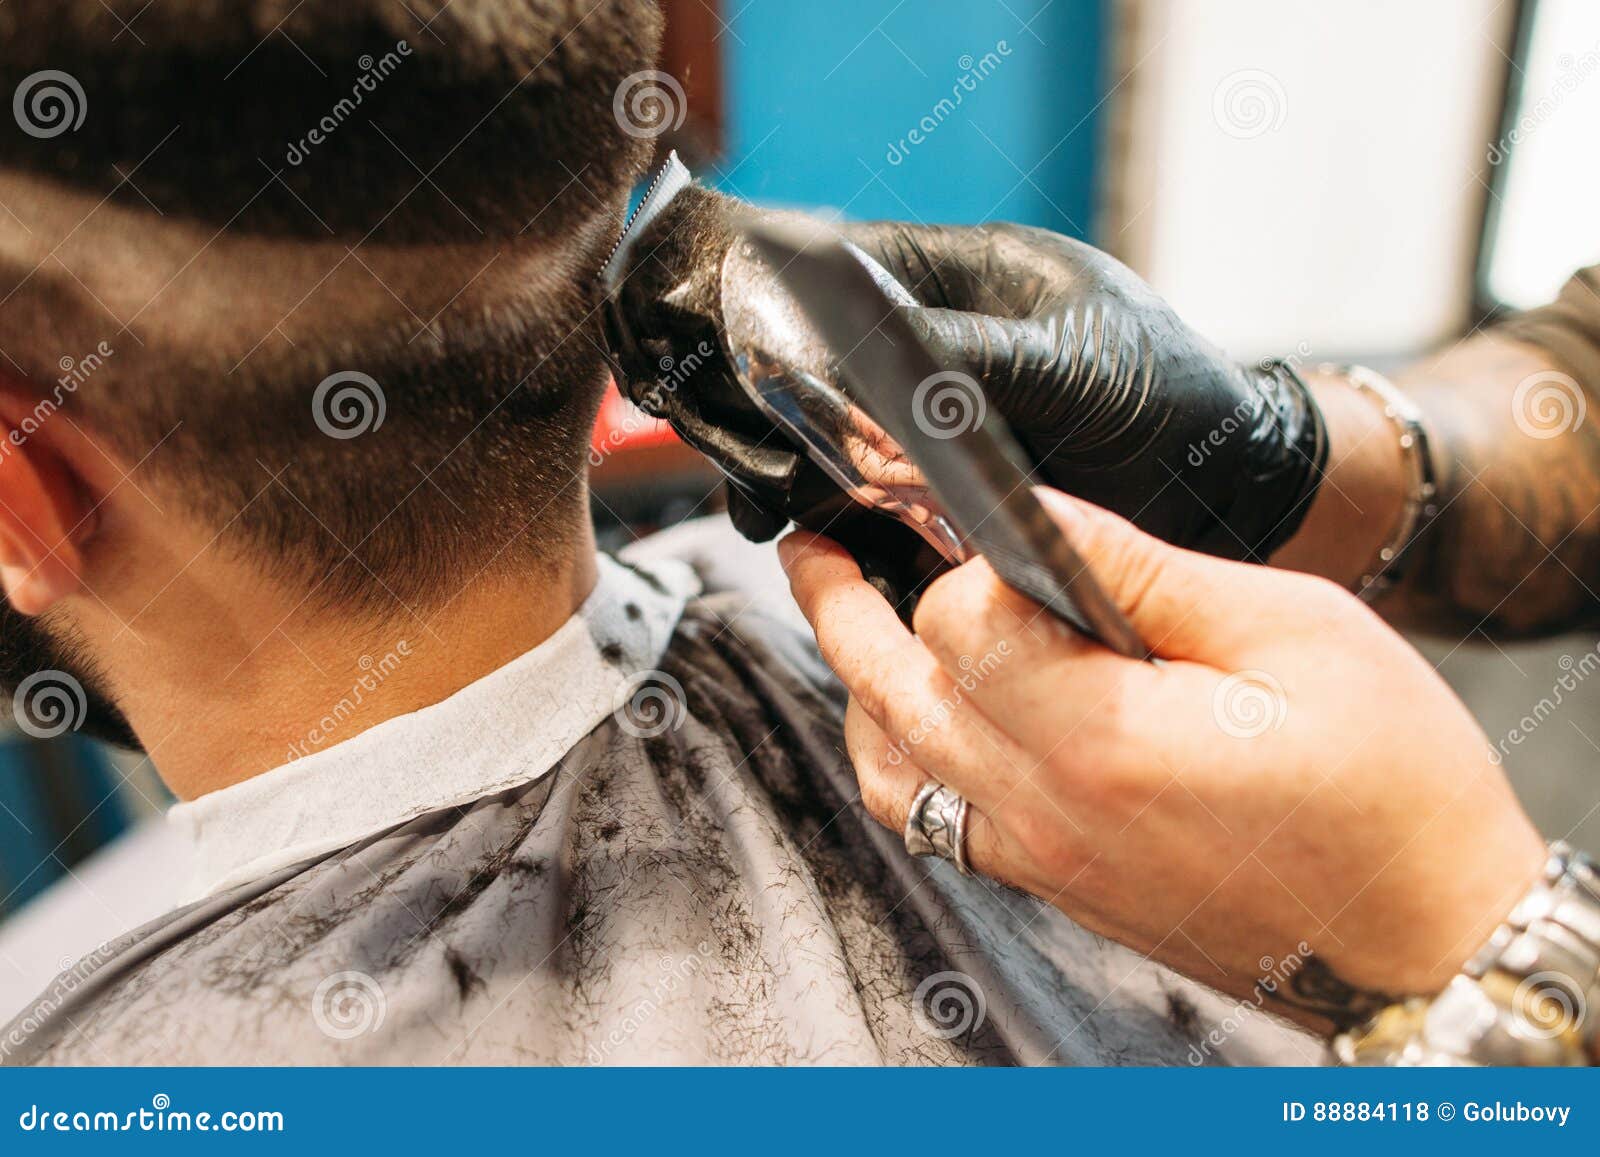 Man Making Curly Haircut At Barber Shop Closeup Stock Photo